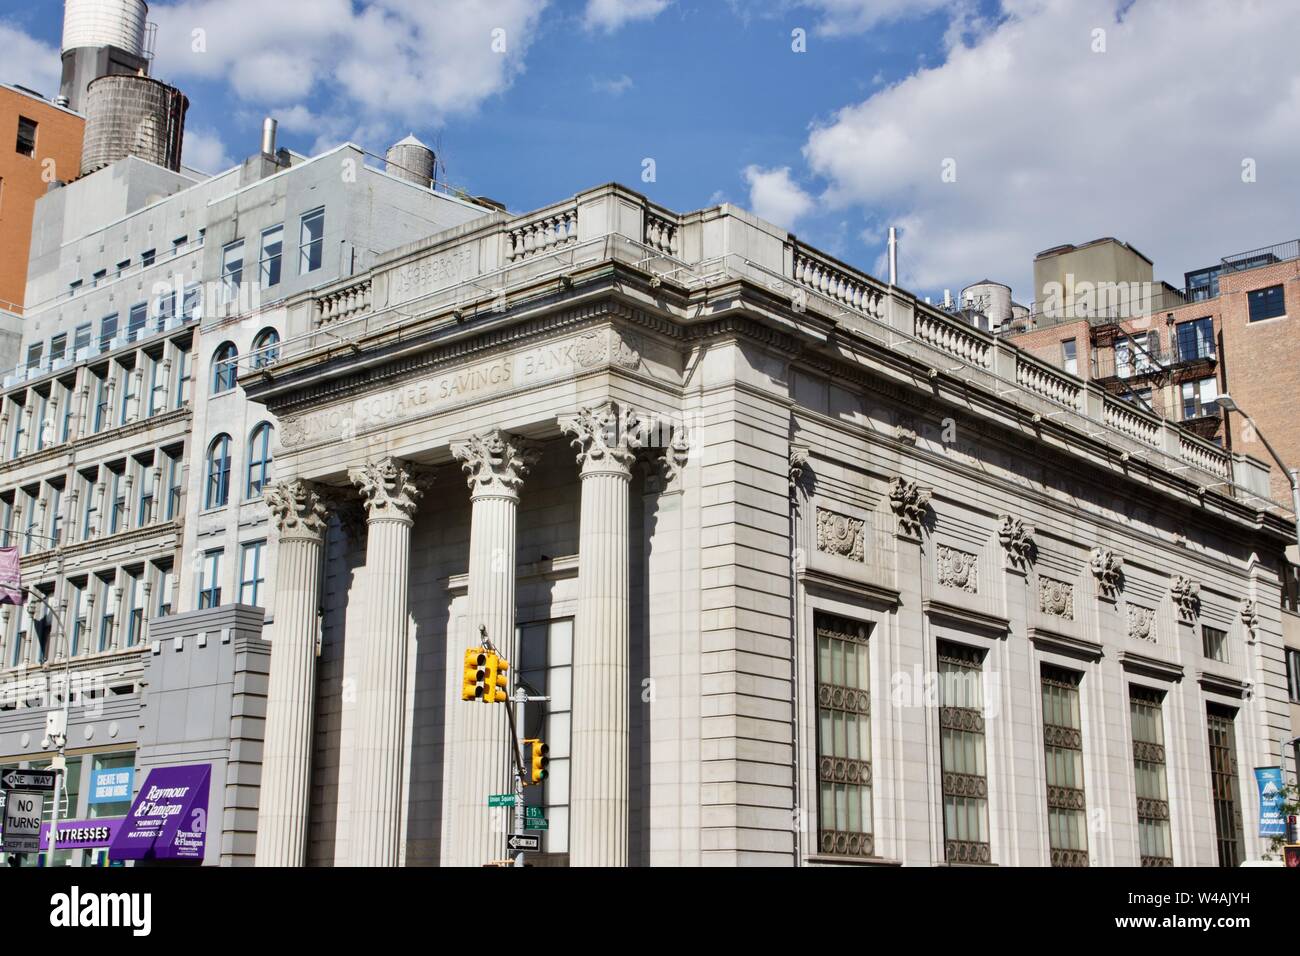 Union Square Savings Bank, progettato da Henry Bacon con colonne corinzie, nella città di New York Foto Stock